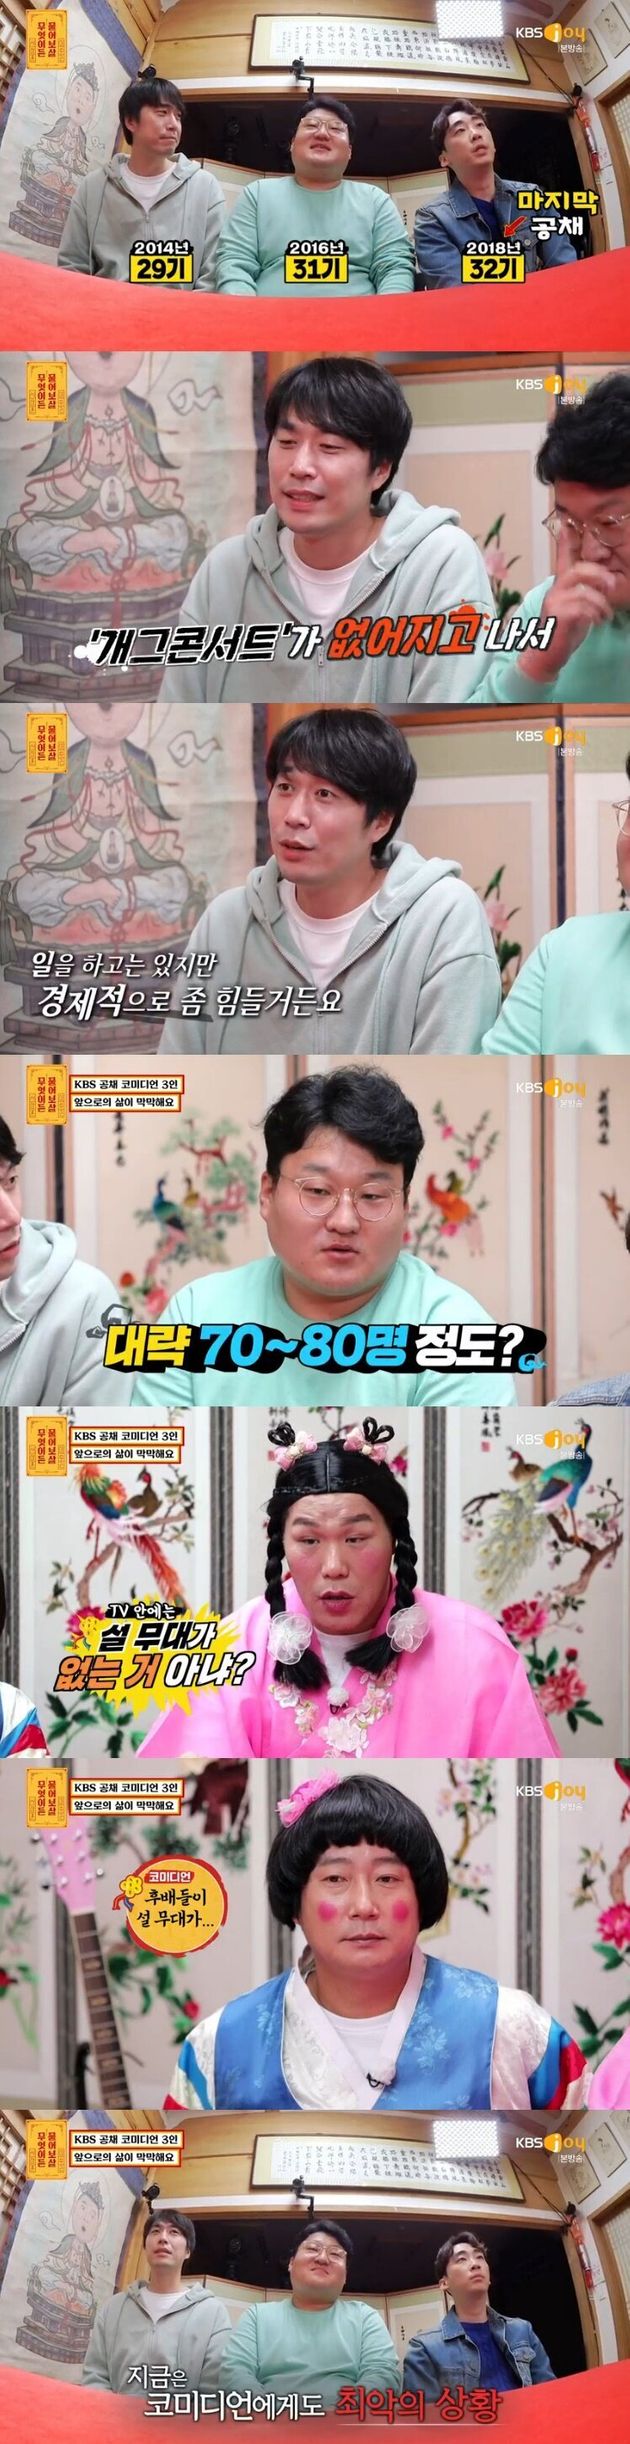 KBS Joy 예능 프로그램 '무엇이든 물어보살'에 출연한 개그맨들.